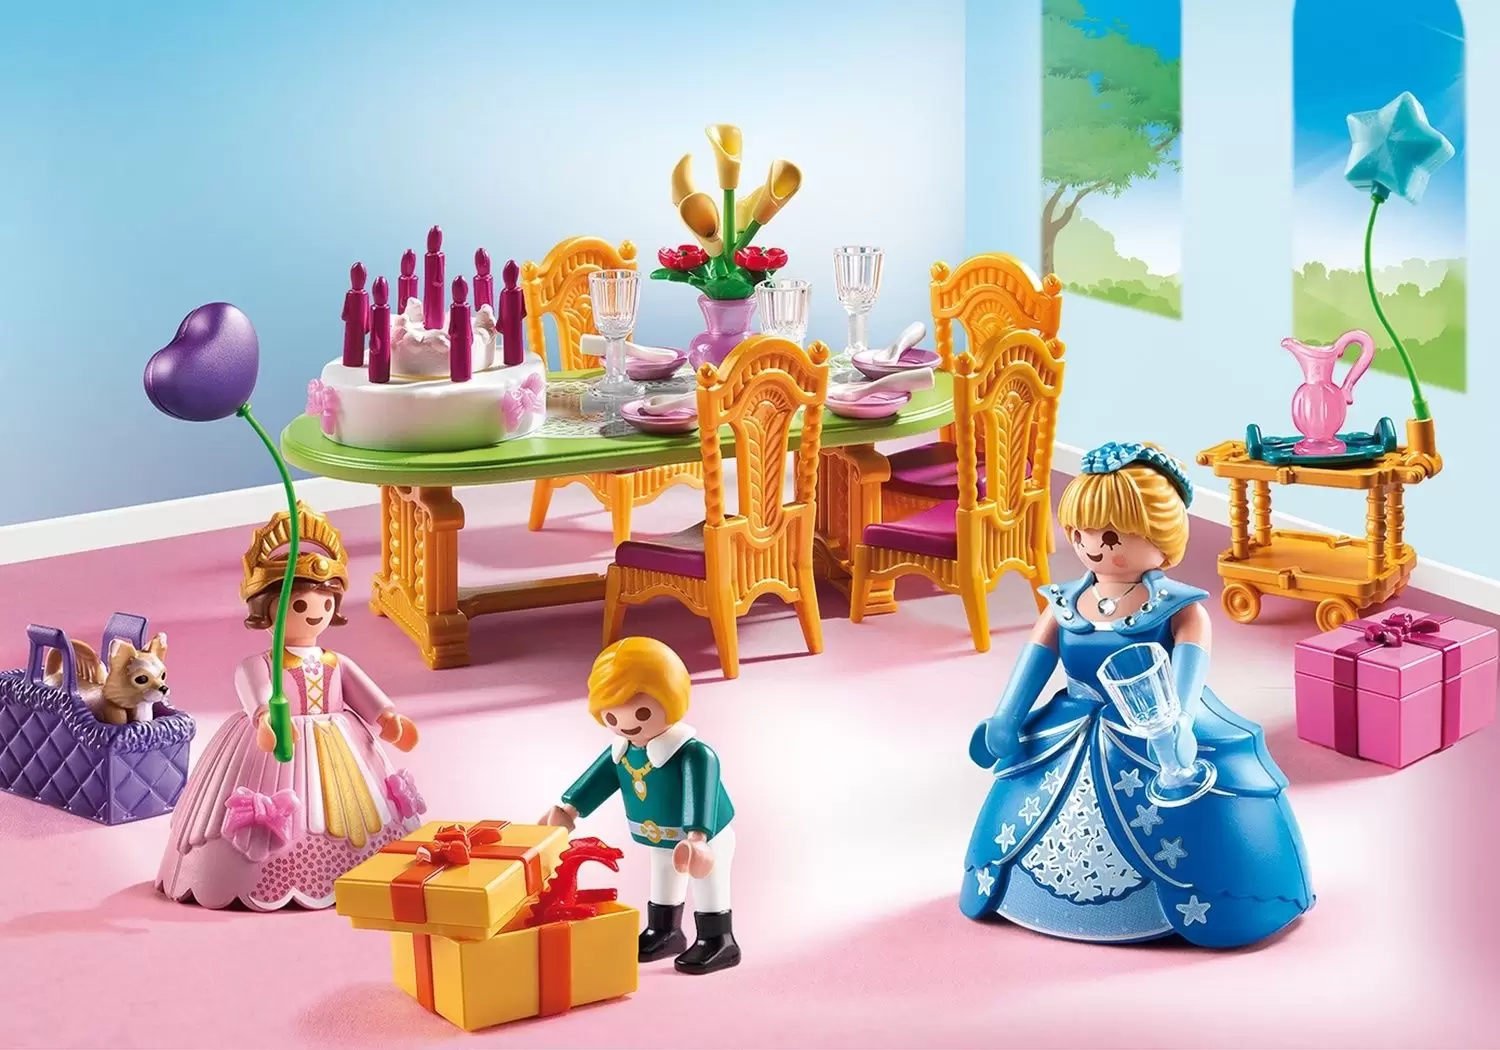 Playmobil Princess - Princess birthday party